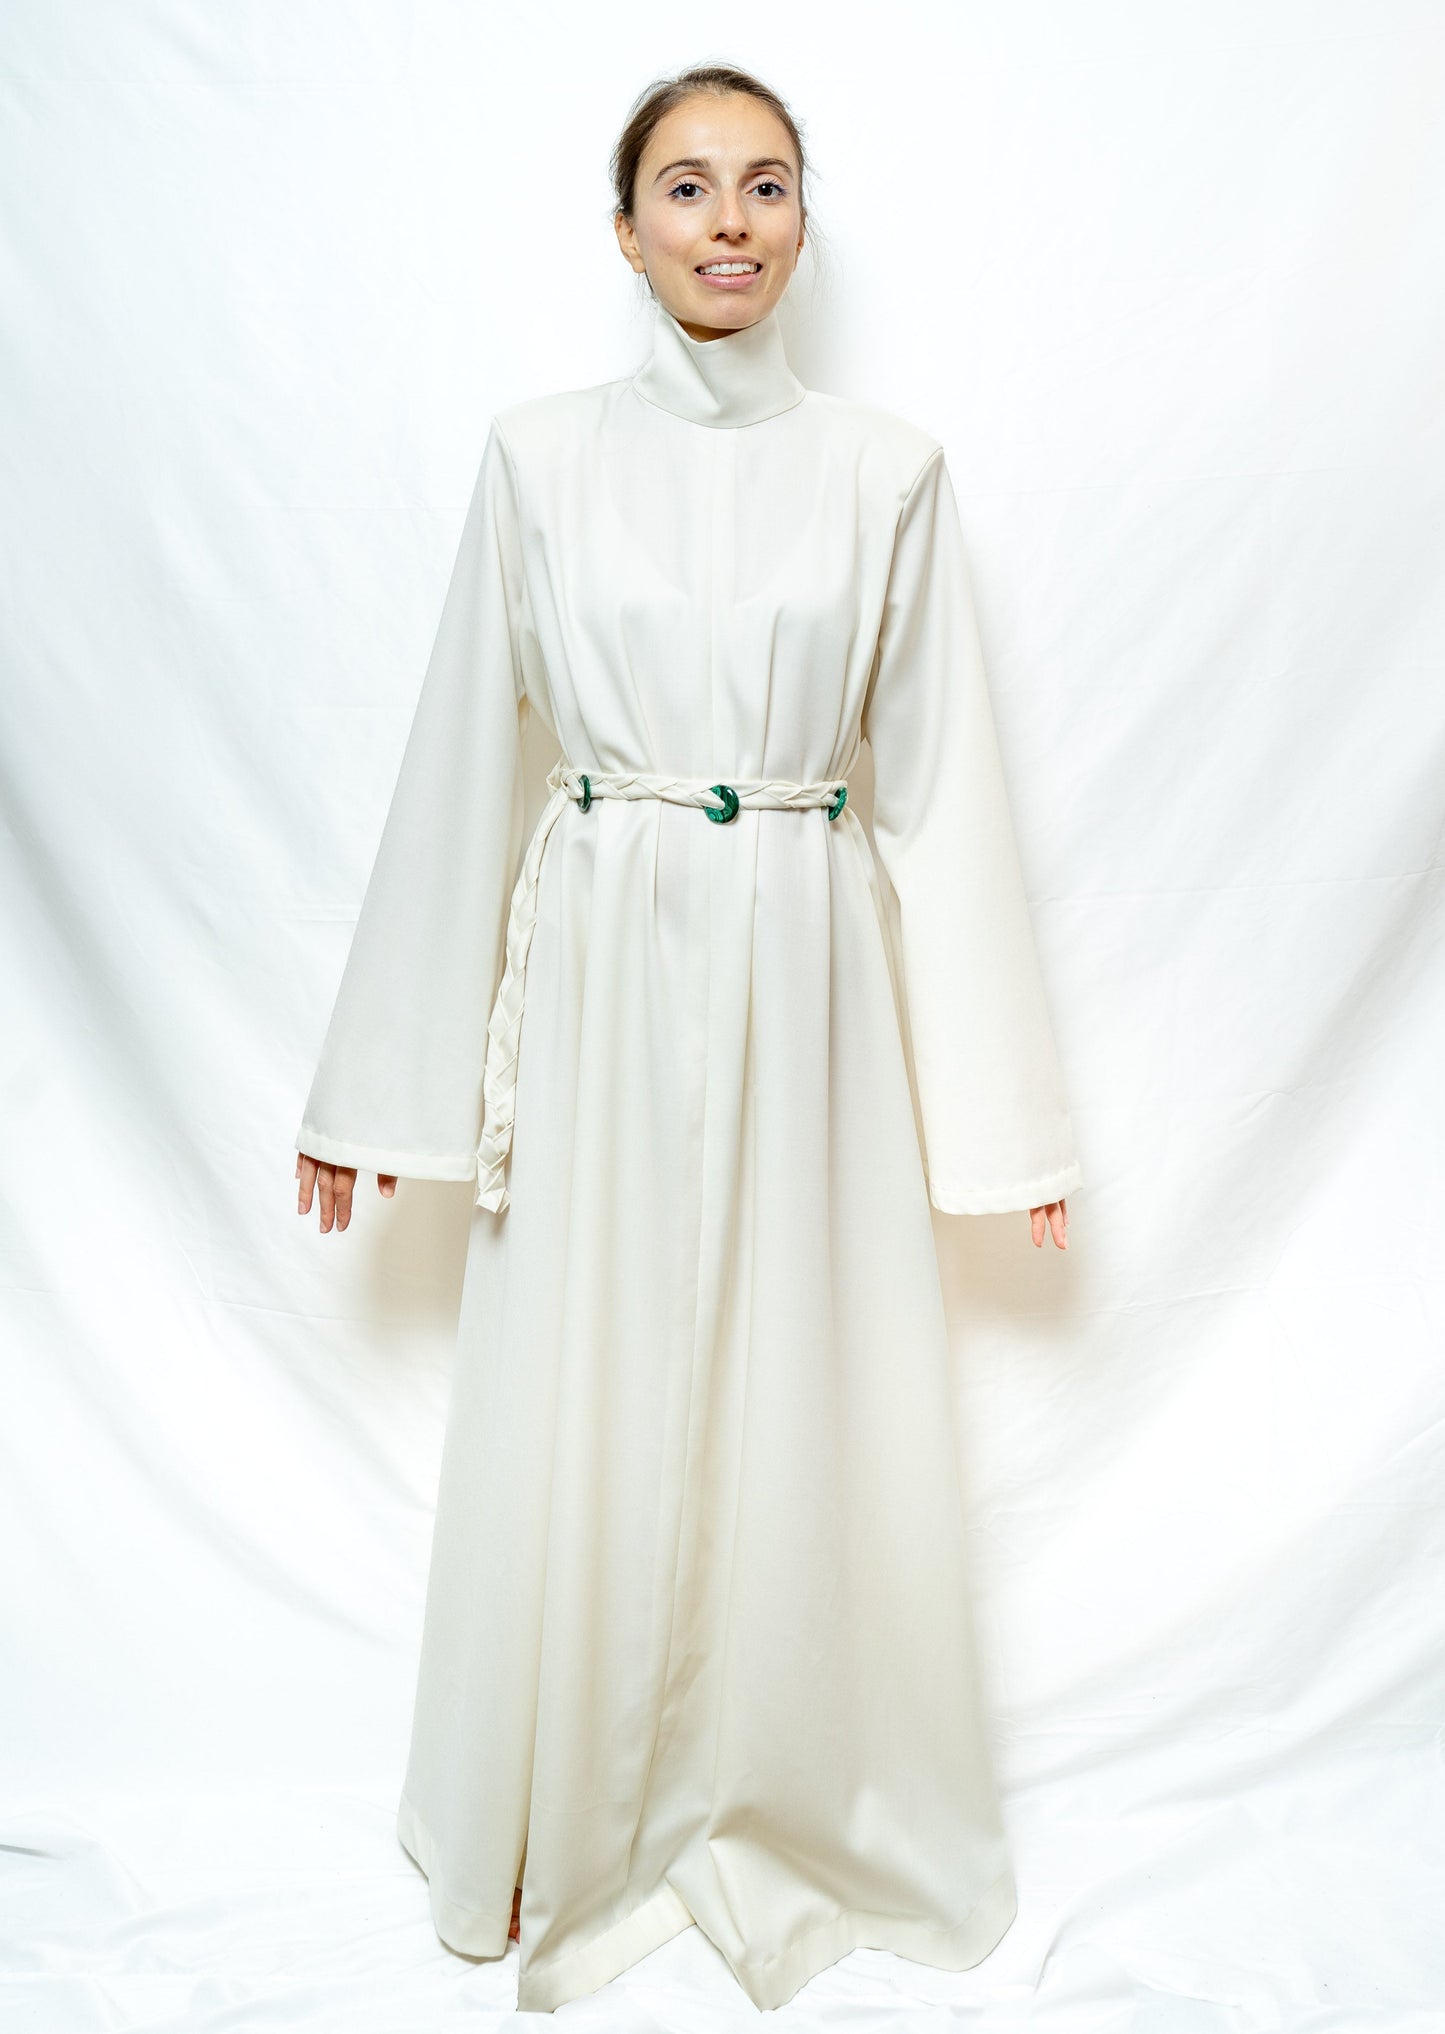 Purity Dress in Wool